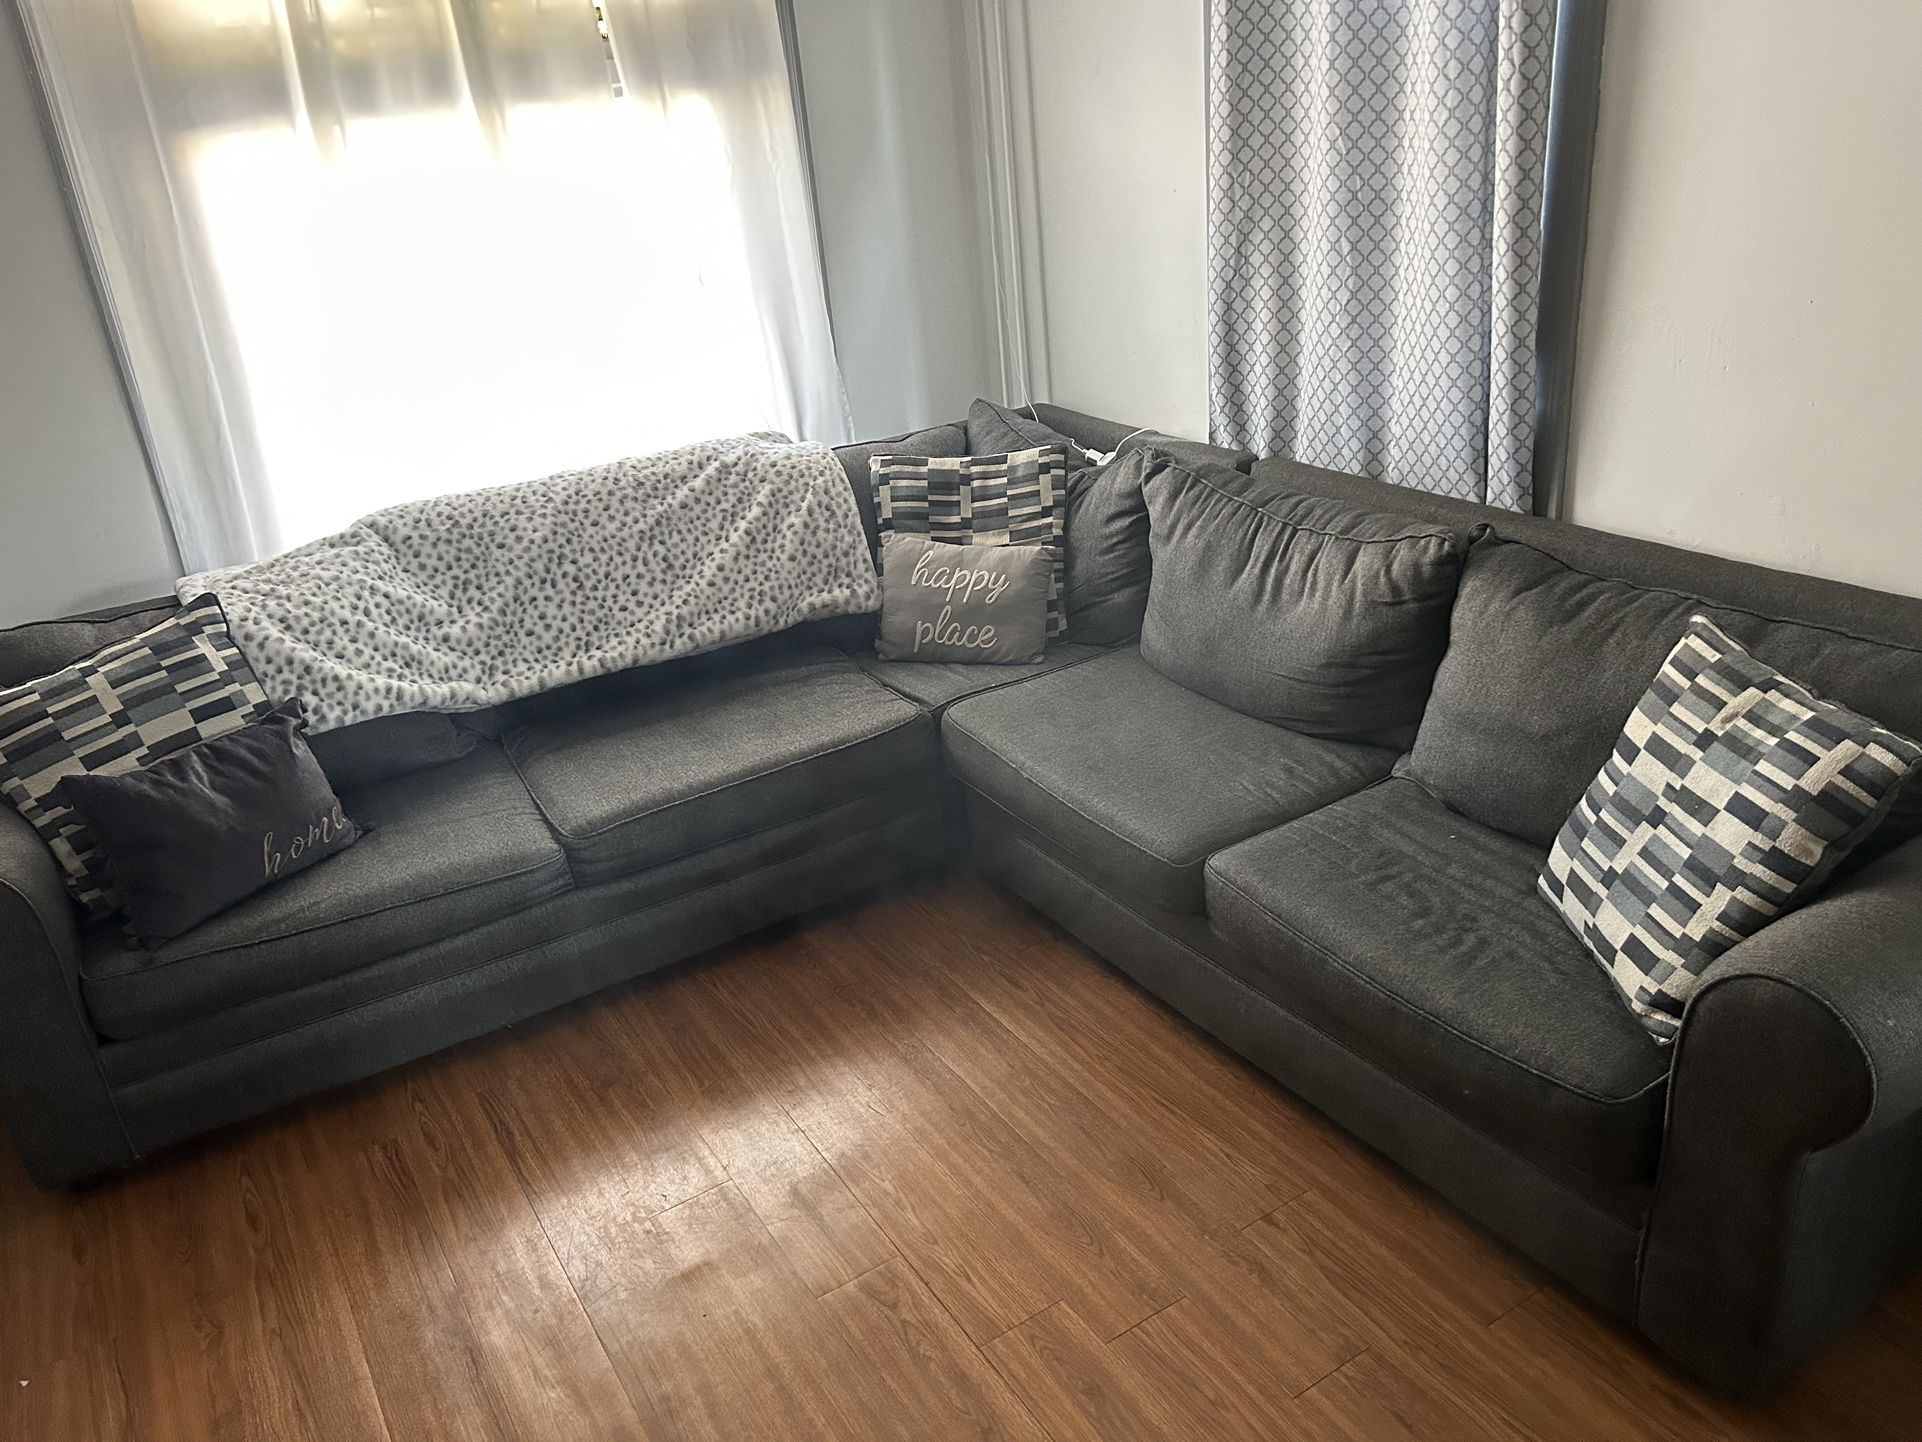 A Sofa Bed 